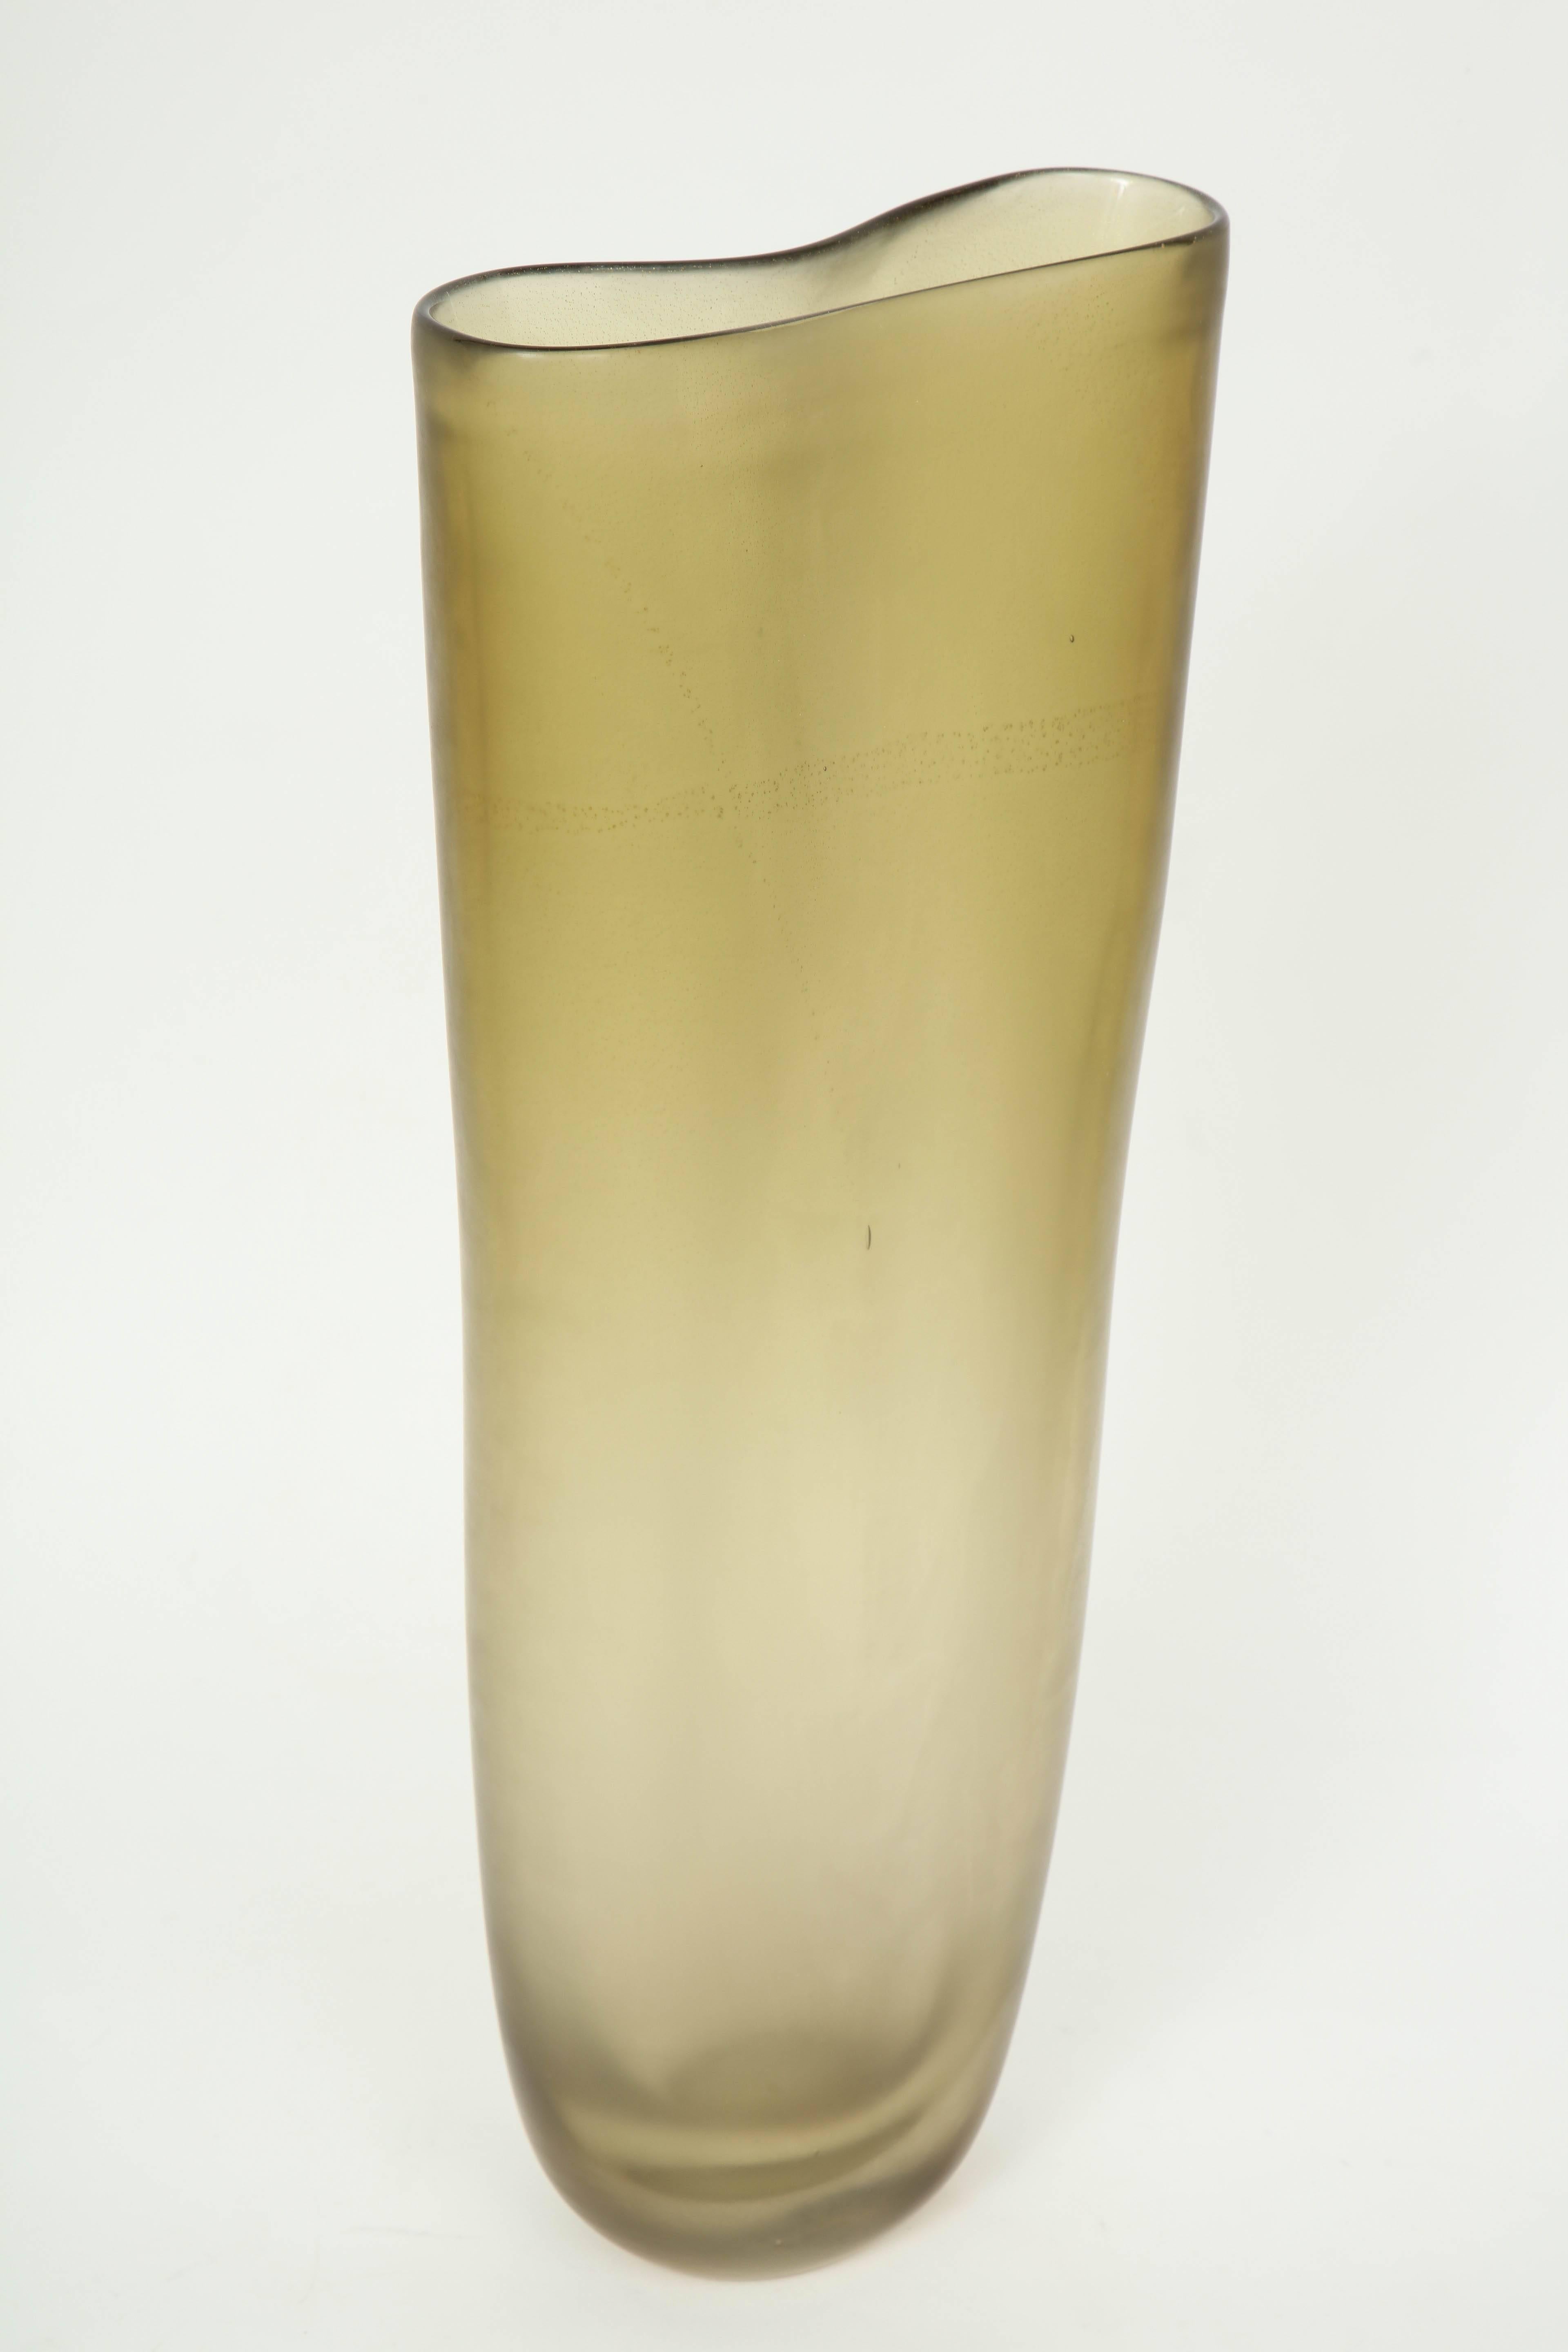 Großflächige Vase aus Muranoglas mit leichtem Ombre-Farbeffekt und verführerischer Satinierung. Die Vase hat eine gekniffene/kreisförmige Öffnung und einen dicken Glasboden. Signiert am Boden.